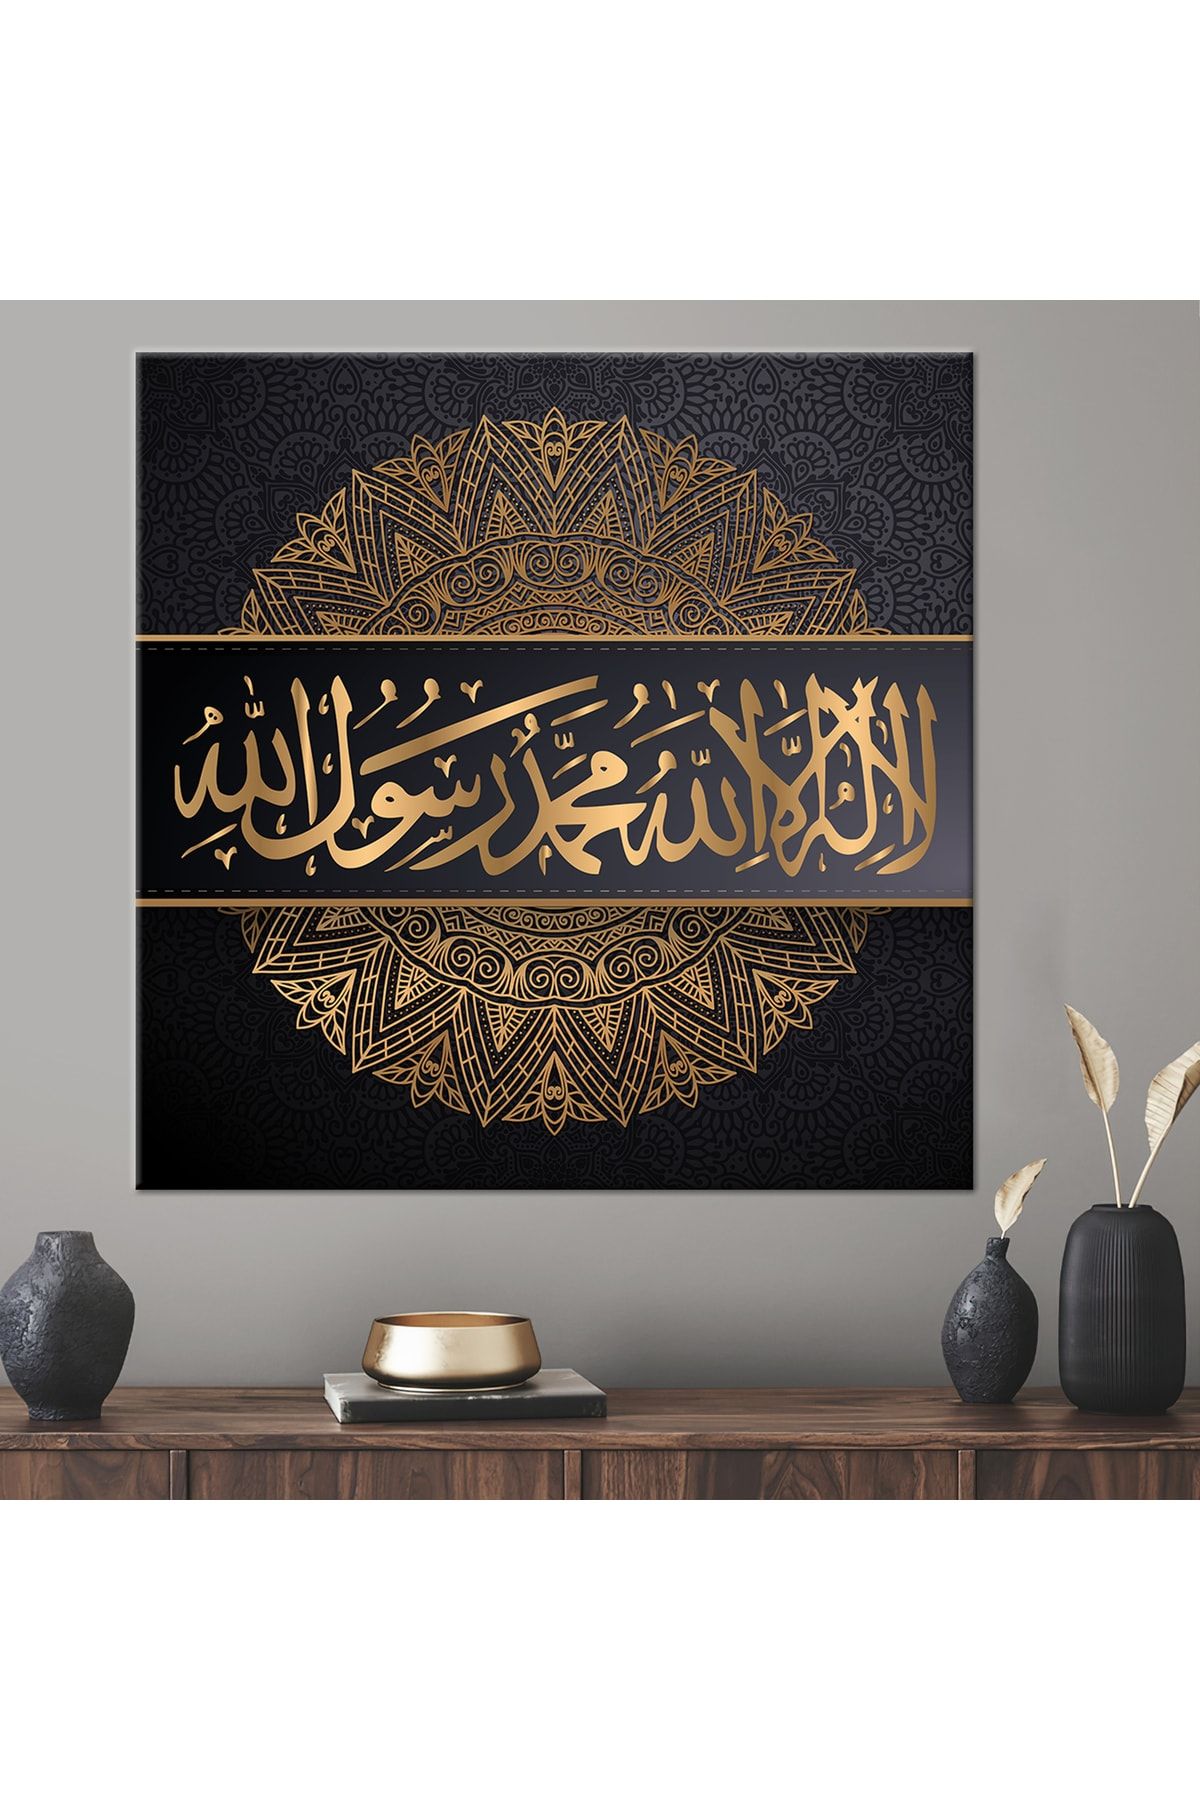 Kayra Export Kanvas Tablo, Kanvas Tablo, La Ilahe Illallah Muhammed Rasulullah, Modern, Allah Kanvas,